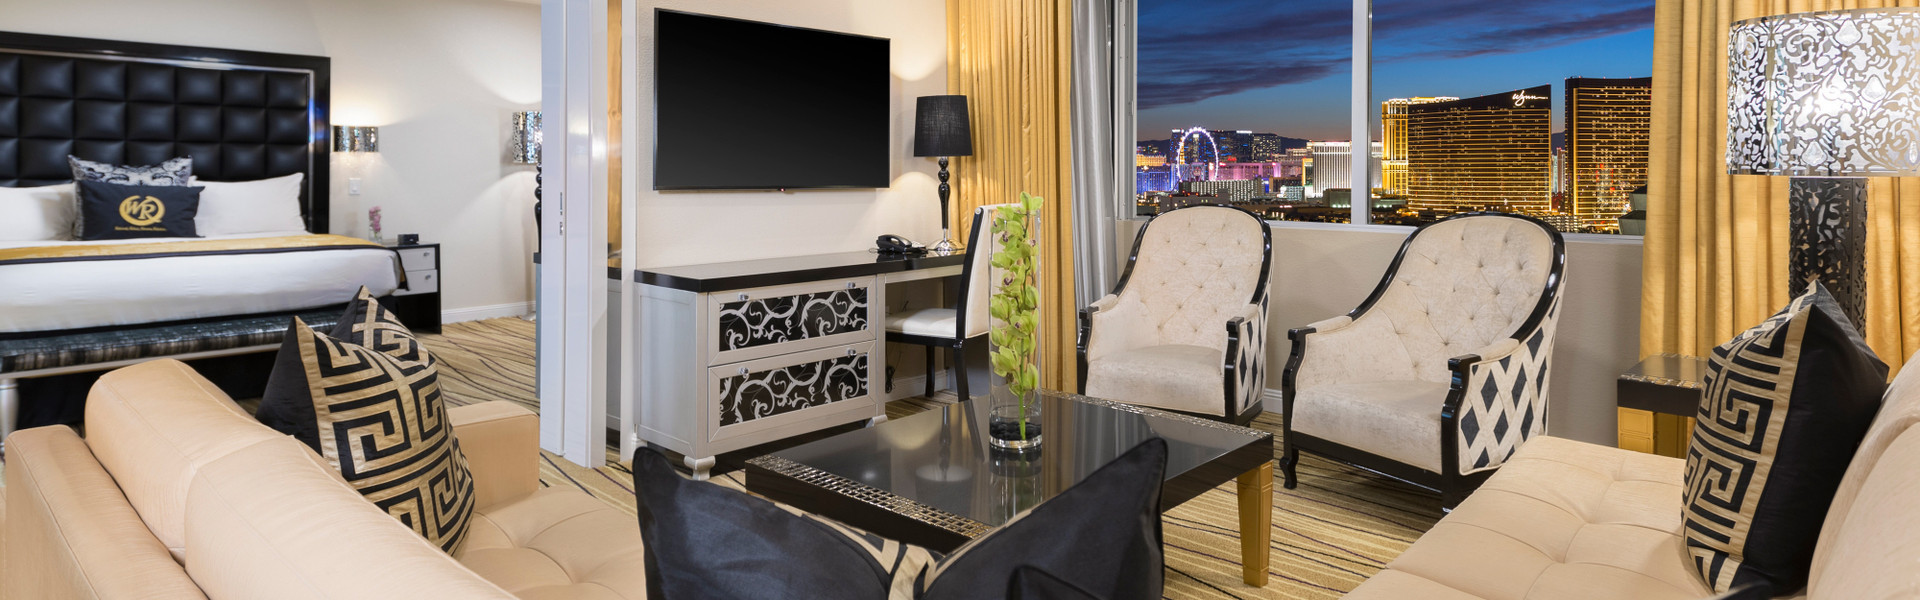 Luxury Las Vegas Hotel Suite At Westgate Las Vegas Resort